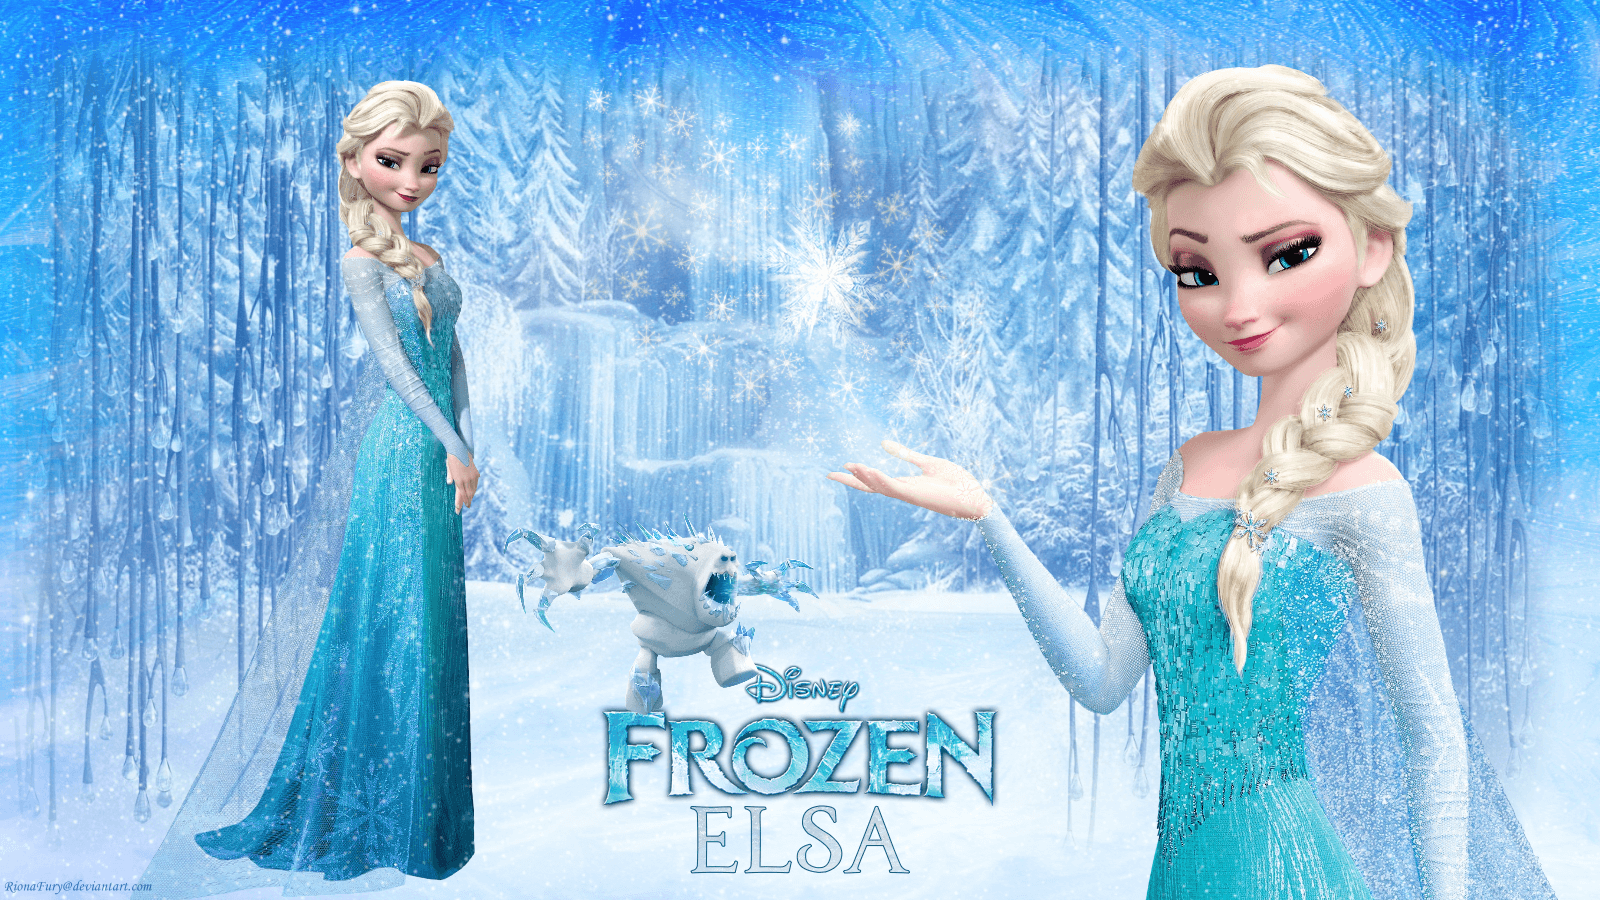 Frozen Elsa Free Fall Hd Wallpaper Free Downloaded